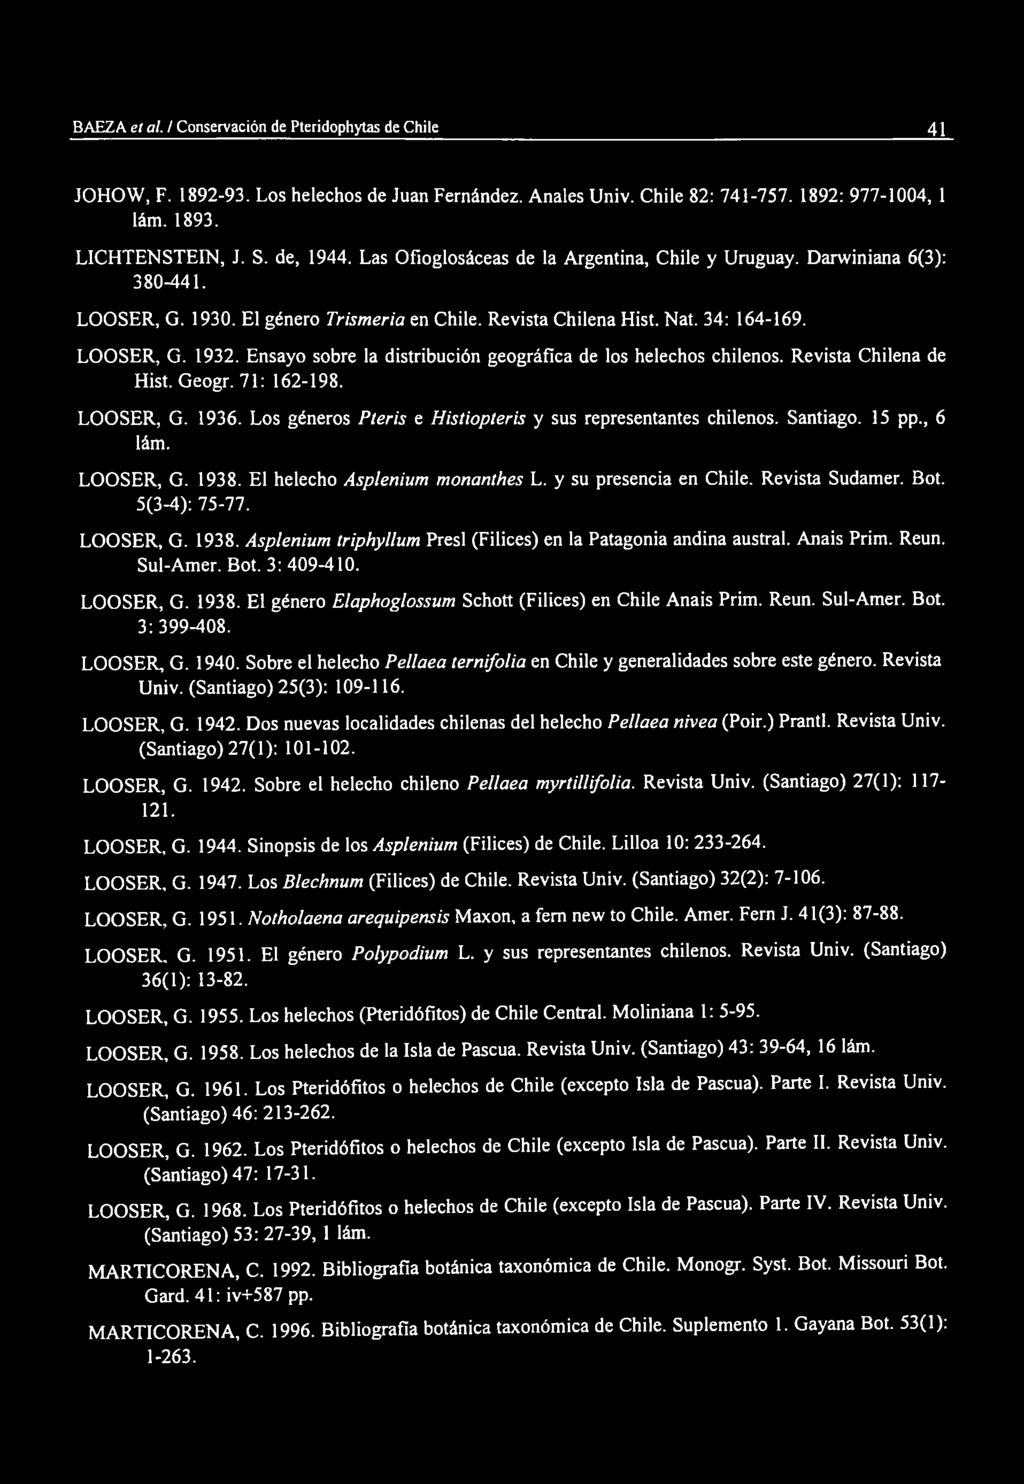 Ensayo sobre la distribución geográfica de los helechos chilenos. Revista Chilena de Hist. Geogr. 71: 162-198. LOOSER, G. 1936. Los géneros Pteris e Histiopteris y sus representantes chilenos.